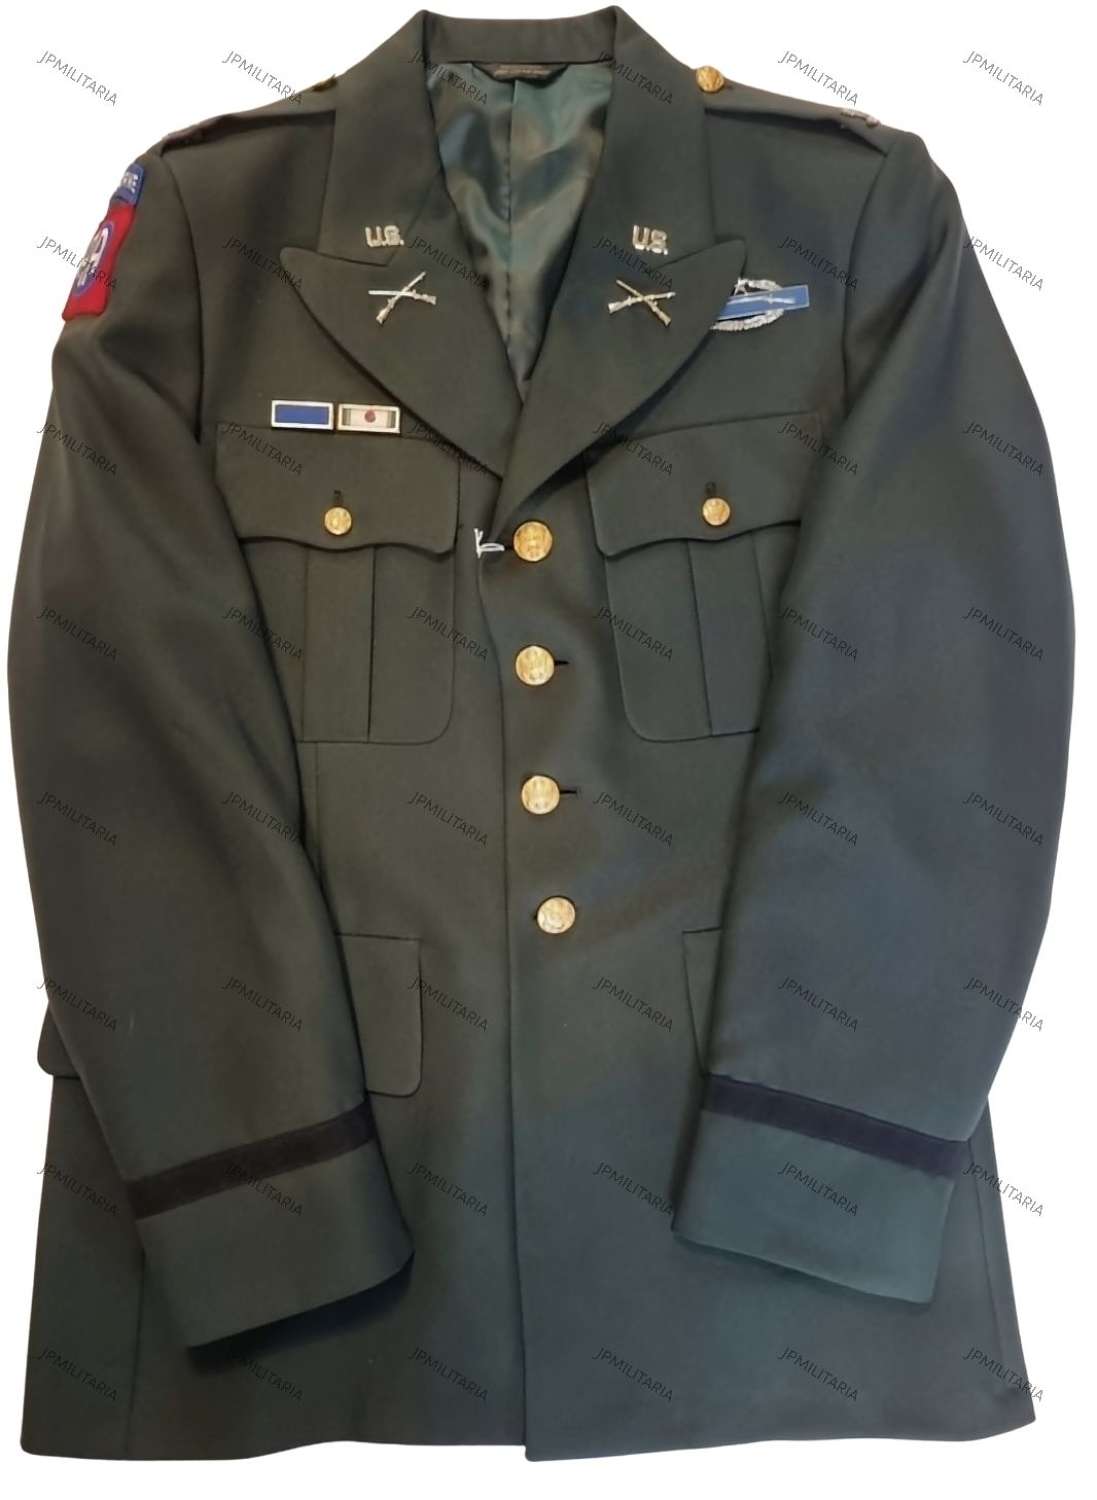 U.S Vietnam era Colonel uniform